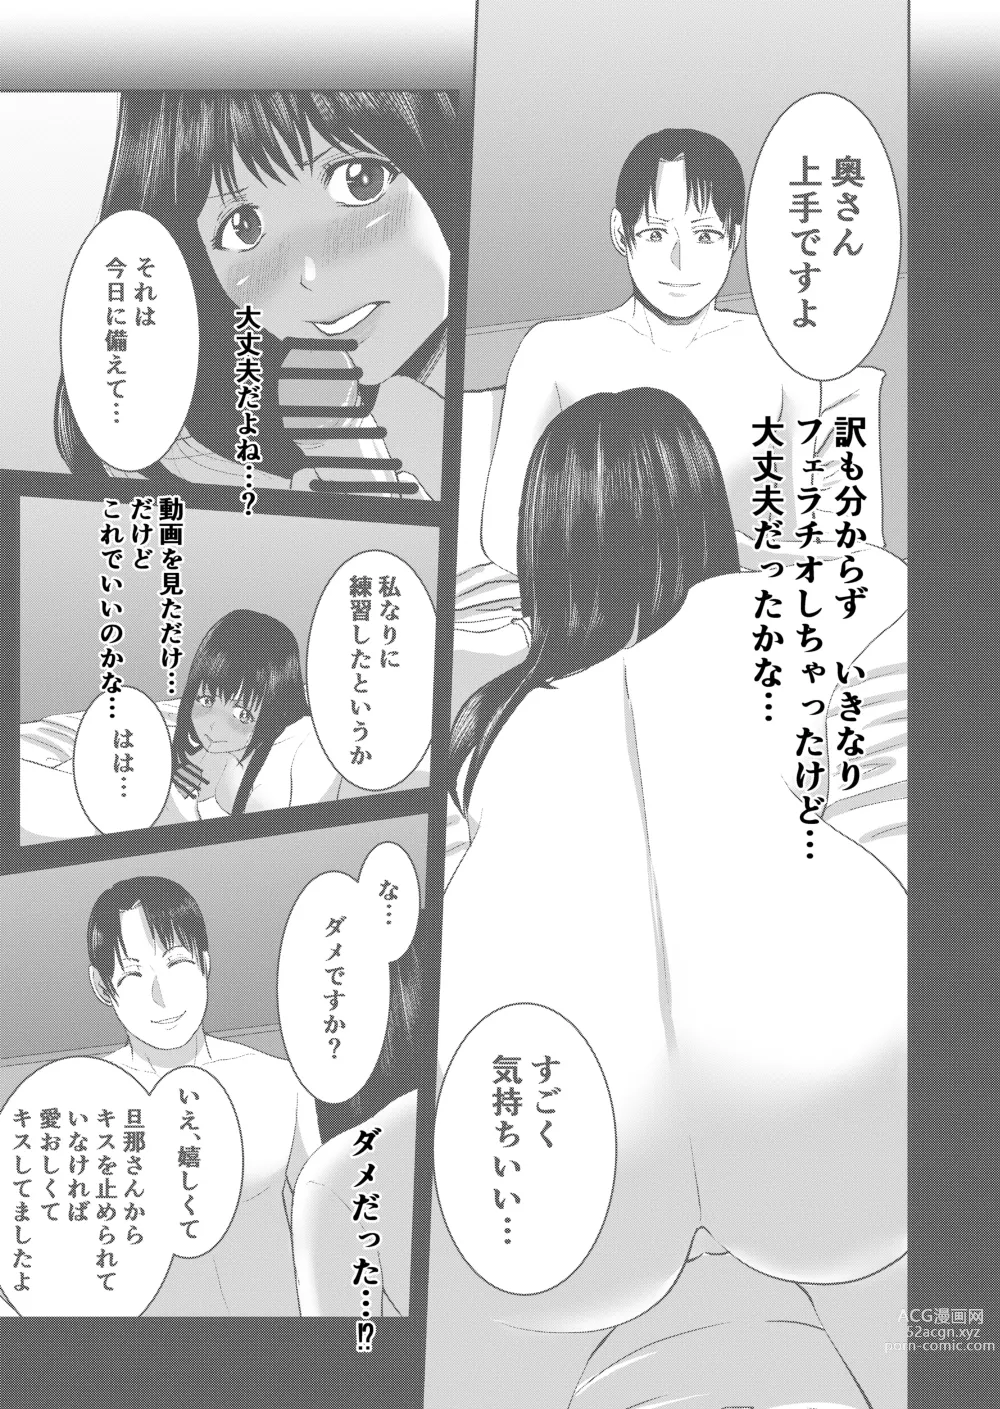 Page 33 of doujinshi Anata no Tame Dakara